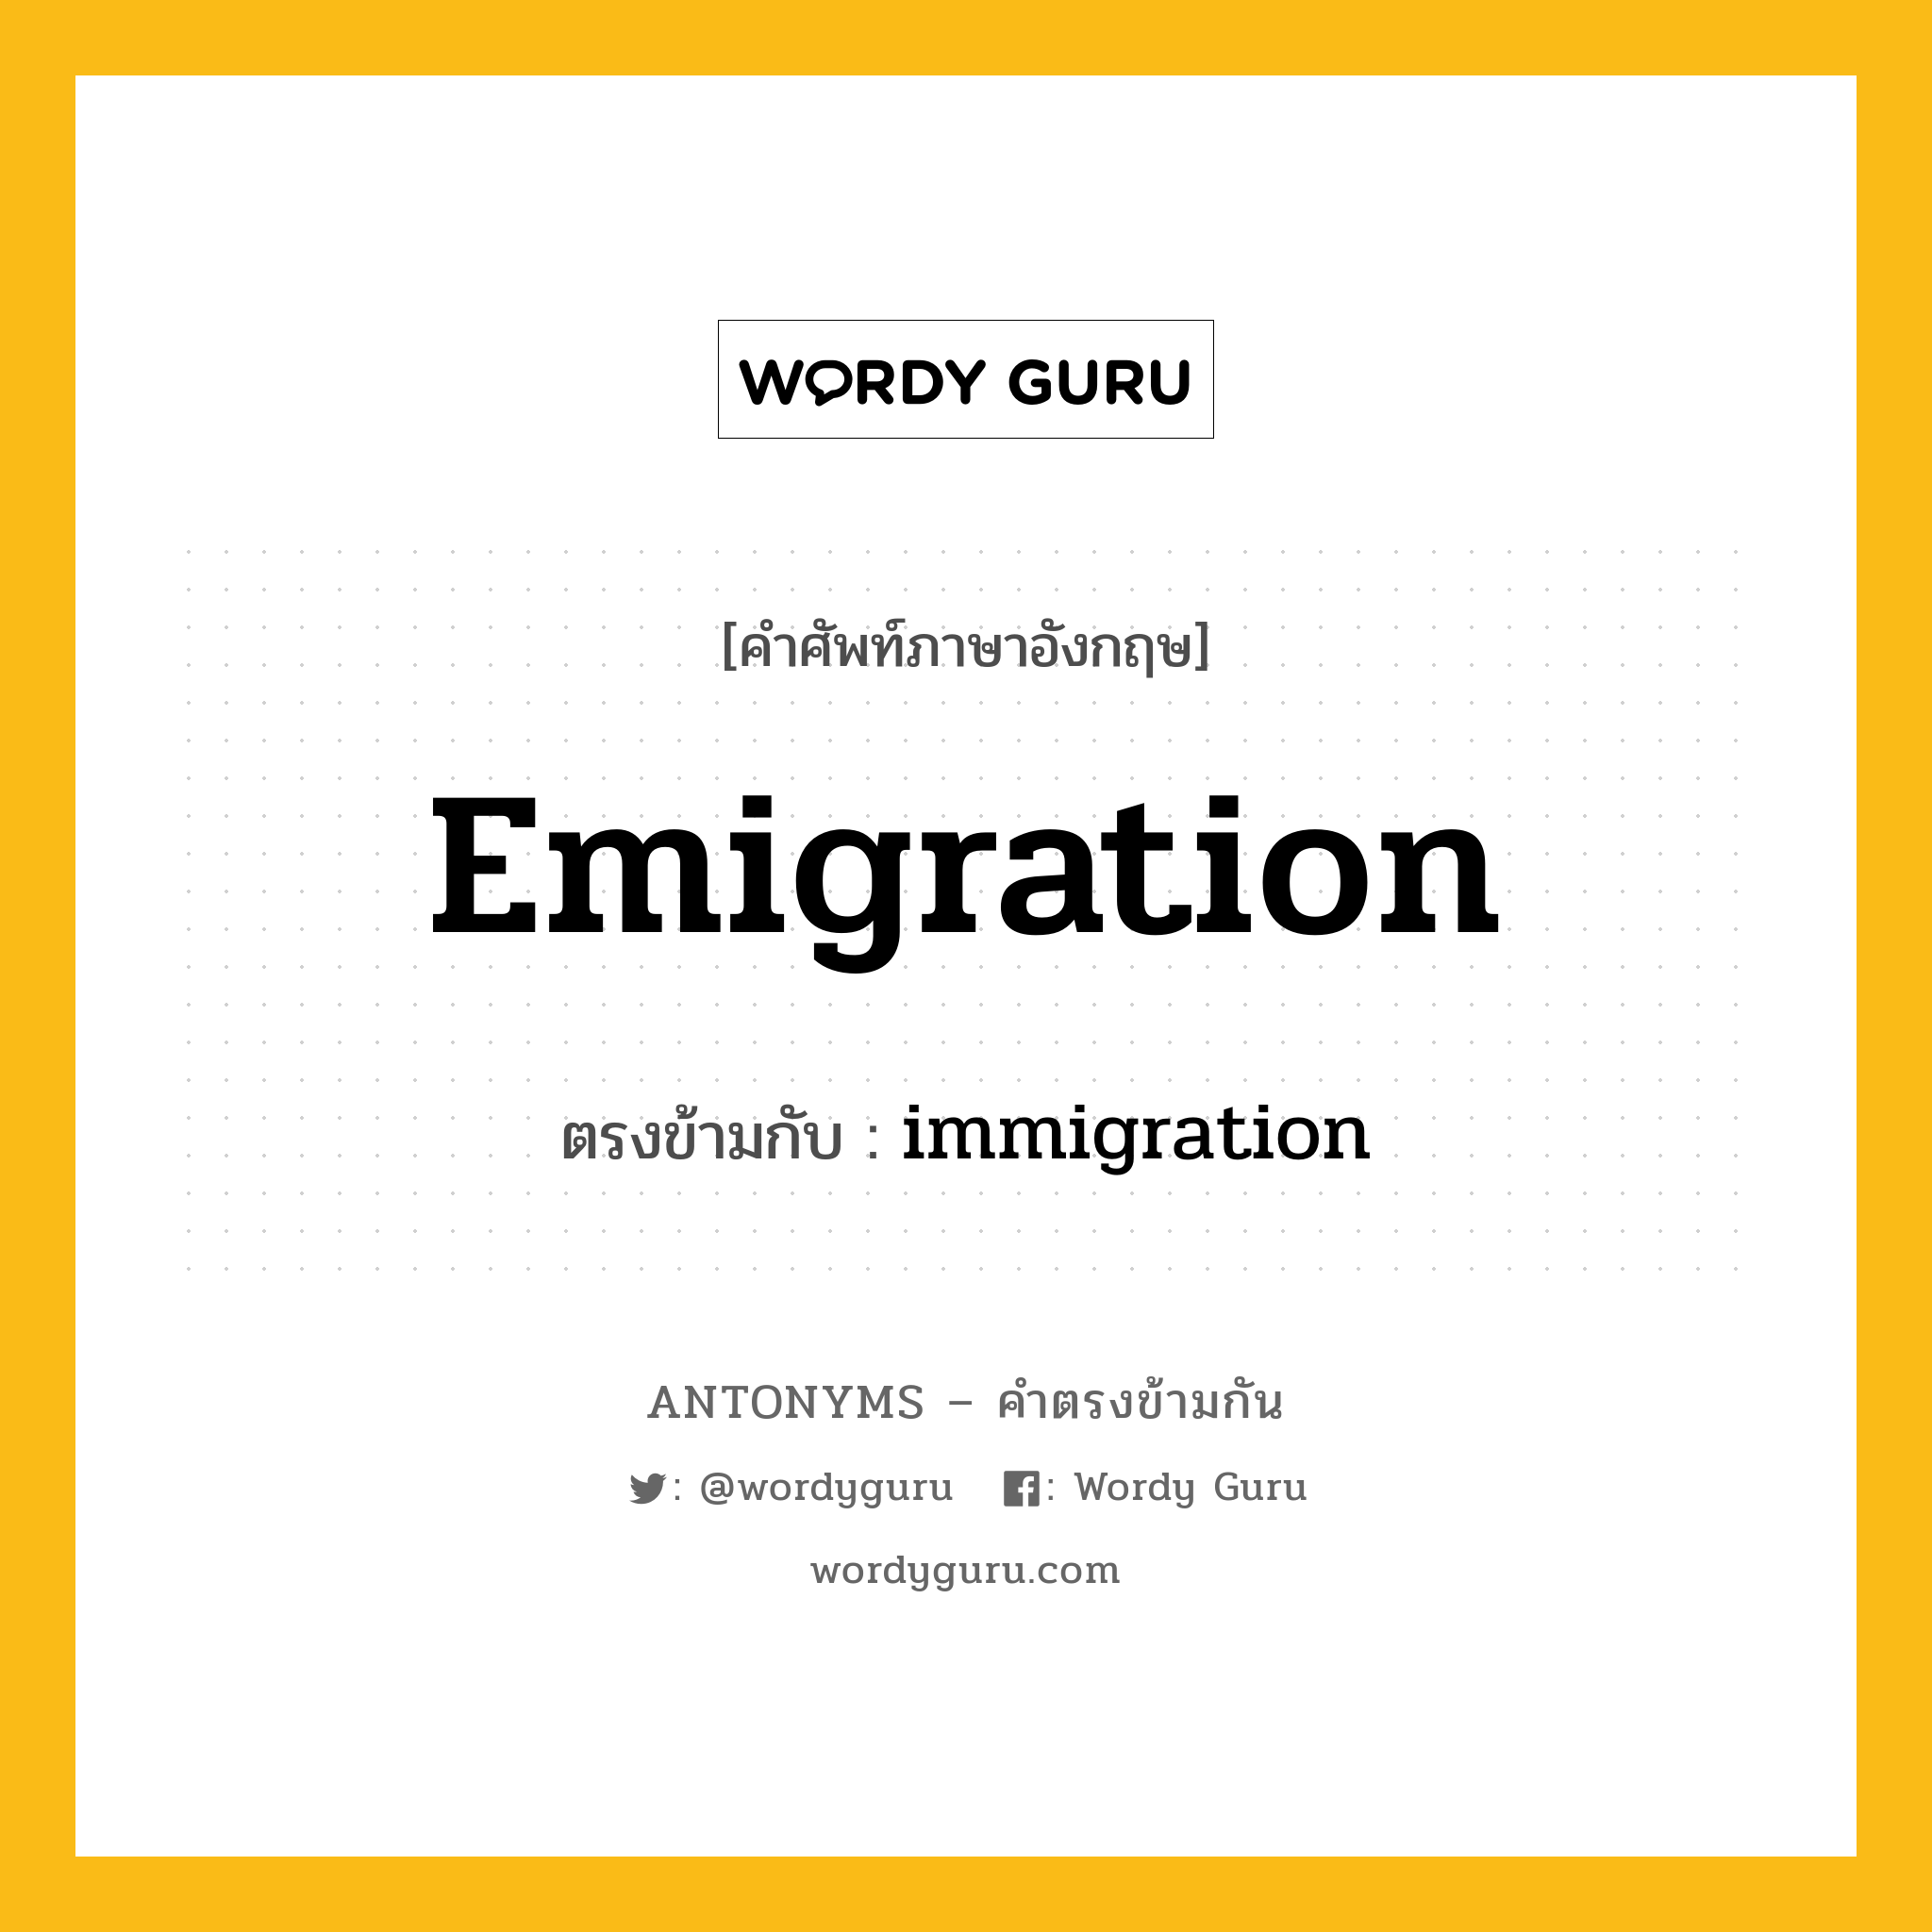 emigration เป็นคำตรงข้ามกับคำไหนบ้าง?, คำศัพท์ภาษาอังกฤษ emigration ตรงข้ามกับ immigration หมวด immigration